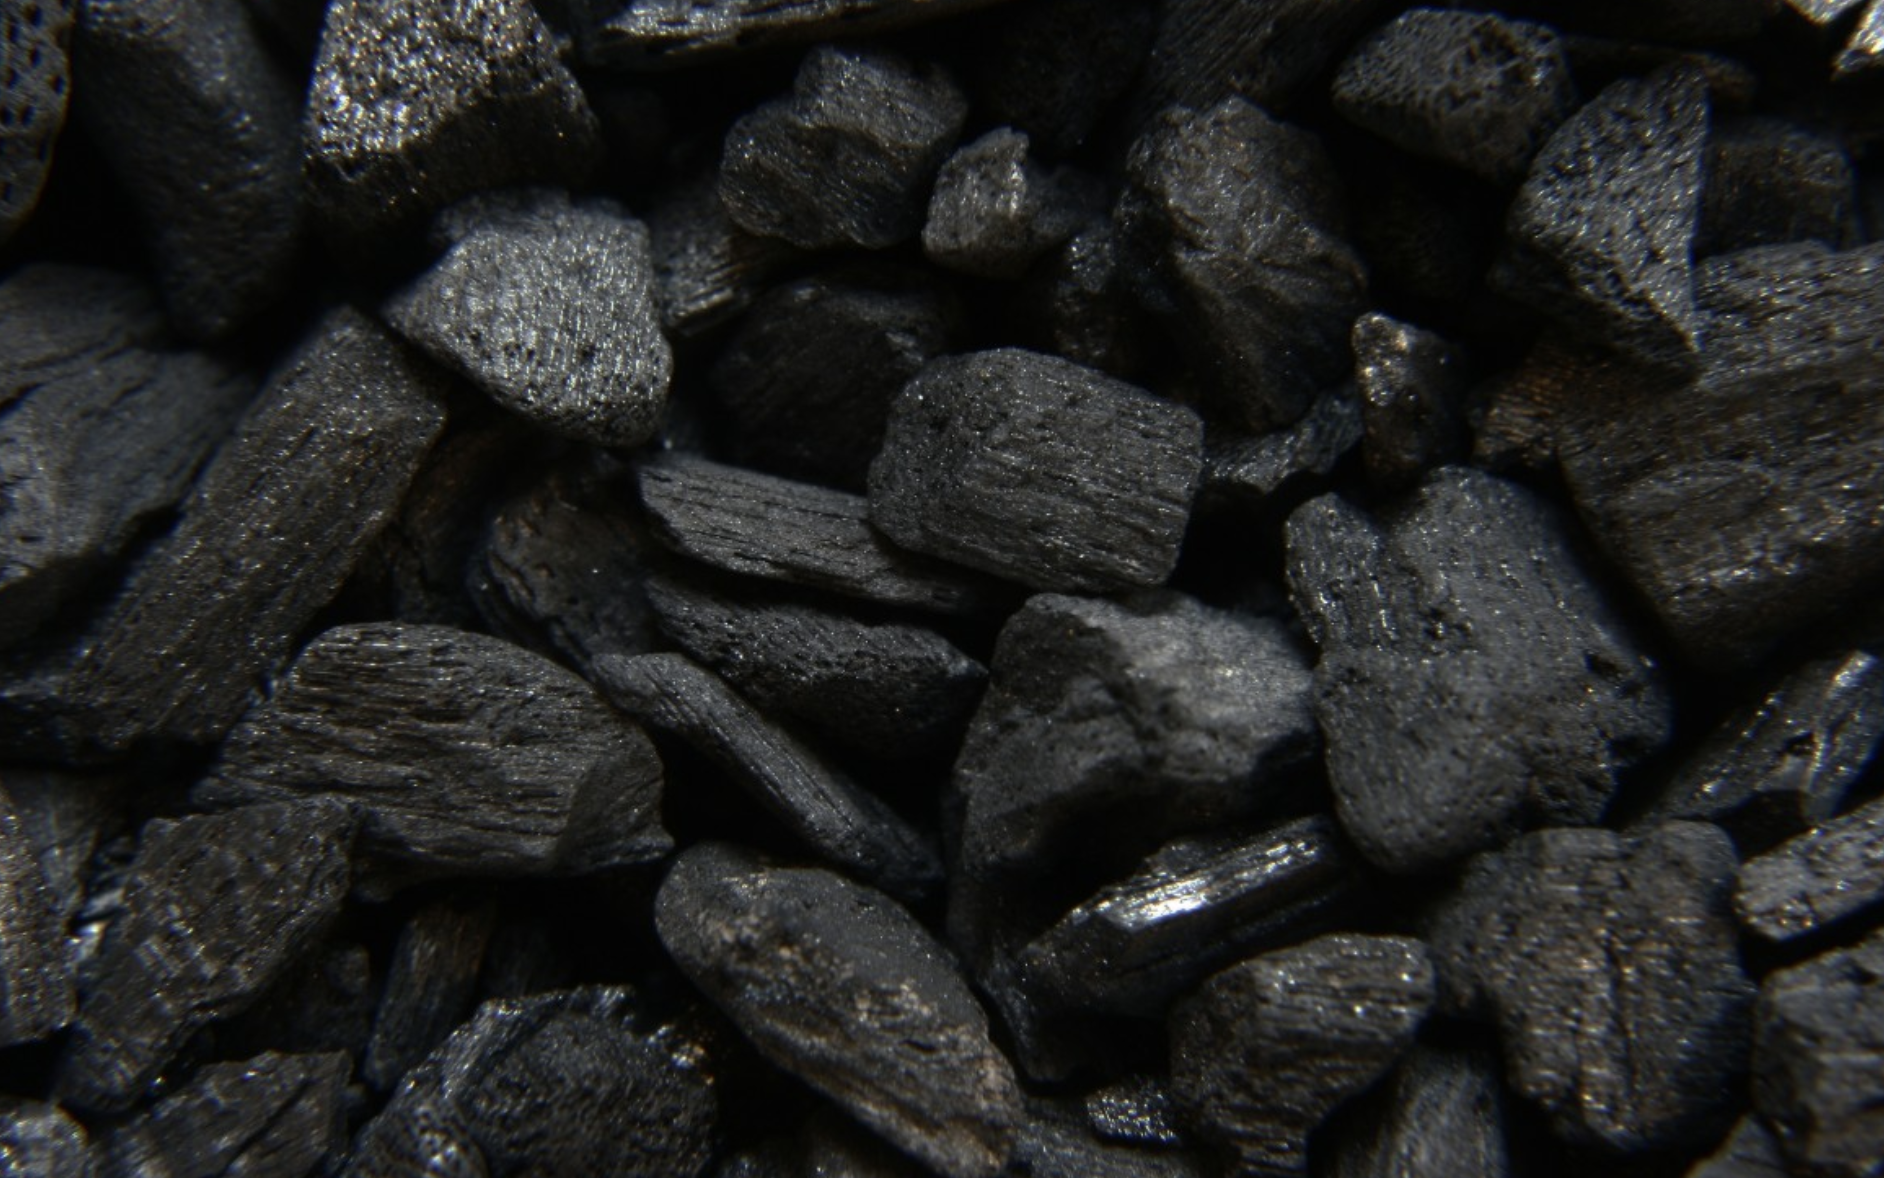 Угольные предприятия Кузбасса принимали новых сотрудников по поддельным дипломам